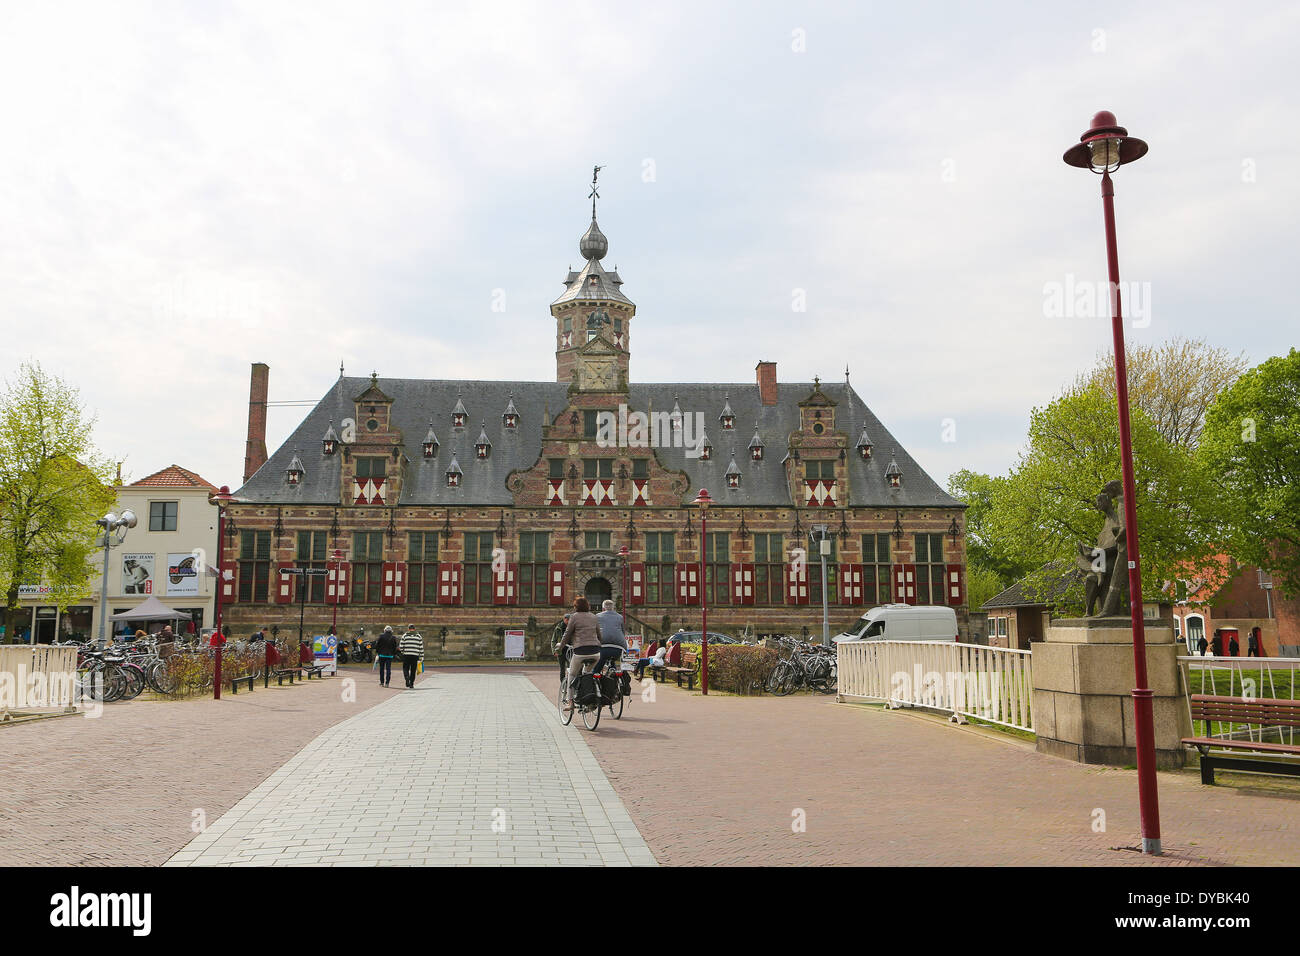 À Middelburg Kloveniersdoelen, capitale de la province de Zélande, aux Pays-Bas.Ce bâtiment a été créé en 1607. Banque D'Images